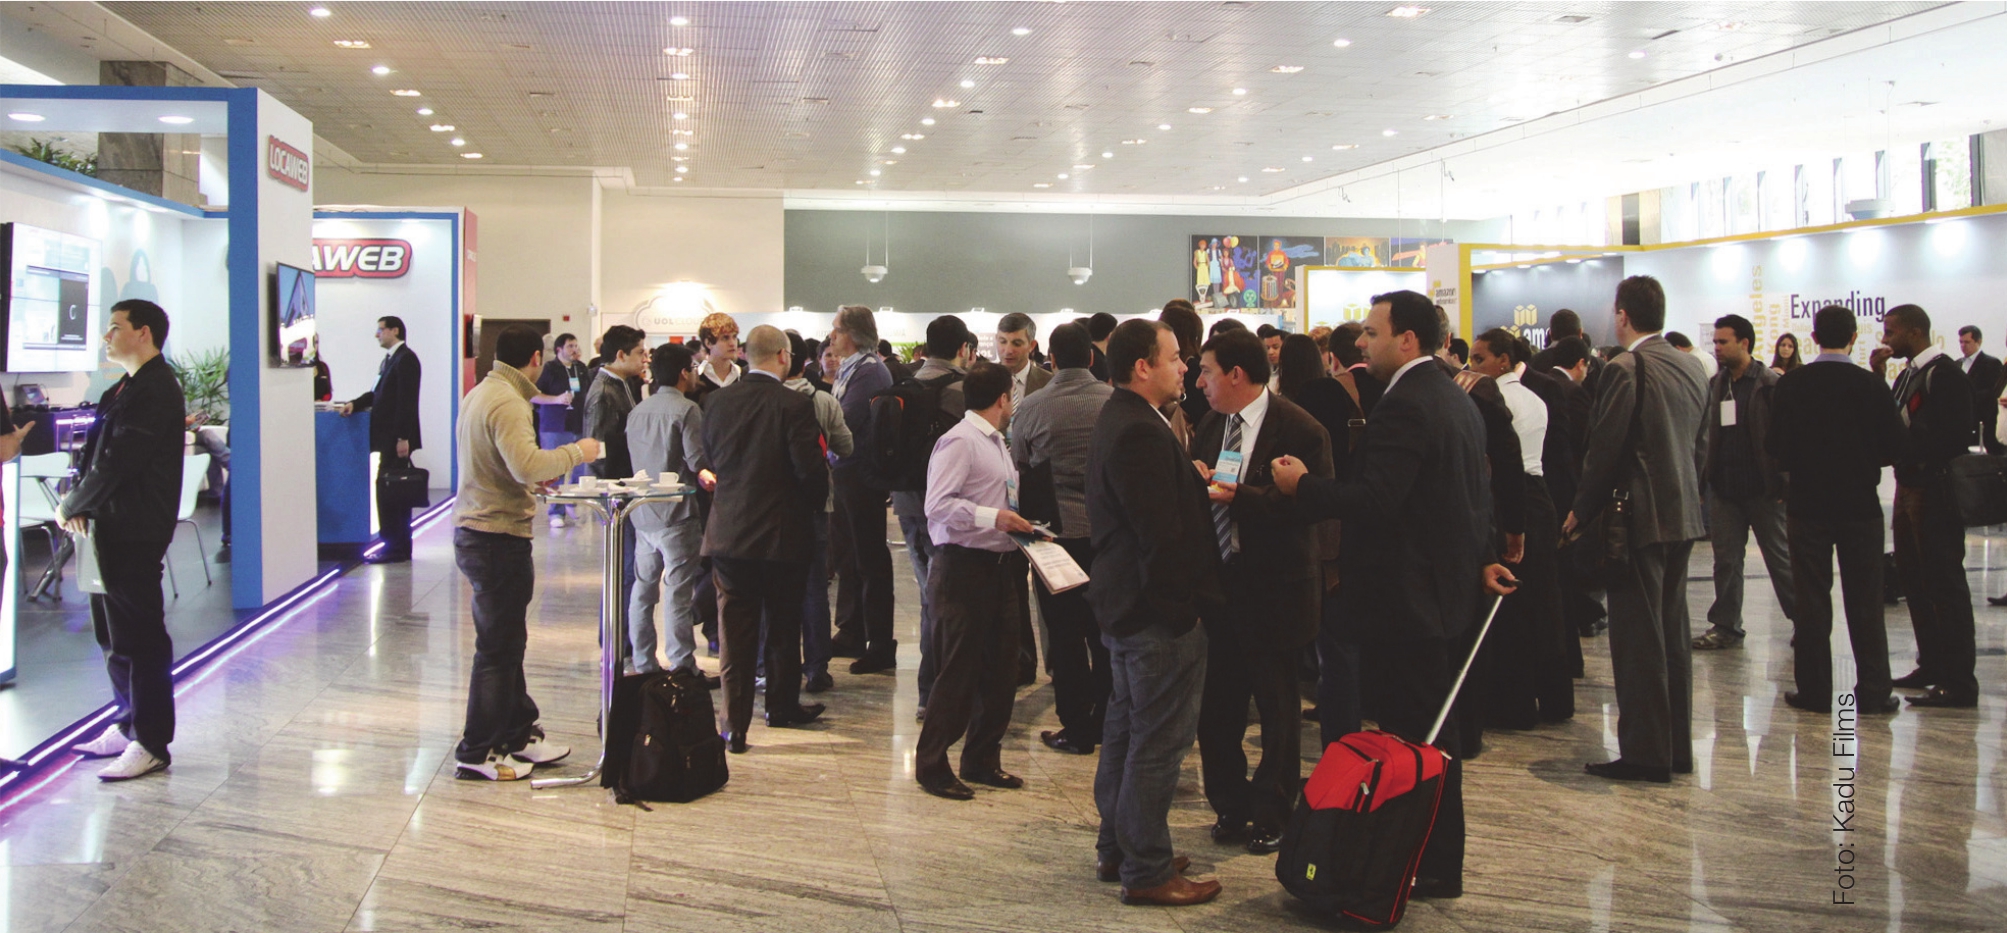 Histórico do evento A CloudConf LatAm 2012 contou com a participação de cerca de 400 executivos de TI, de di versas empresas do Brasil e da América Latina,